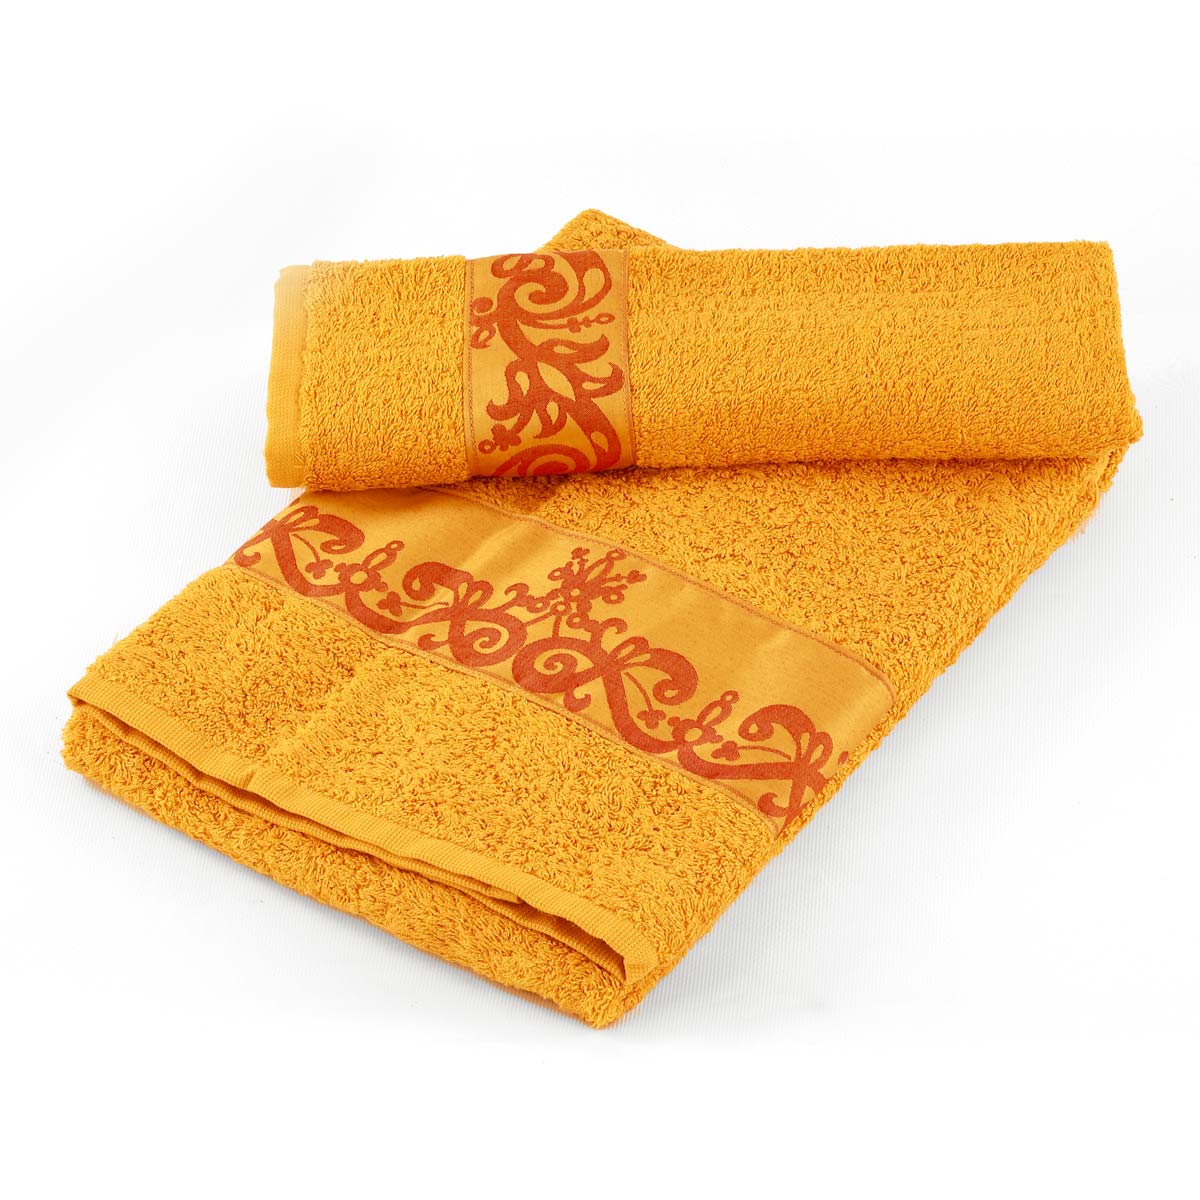 Coppia asciugamani bagno di colore senape con balza in raso